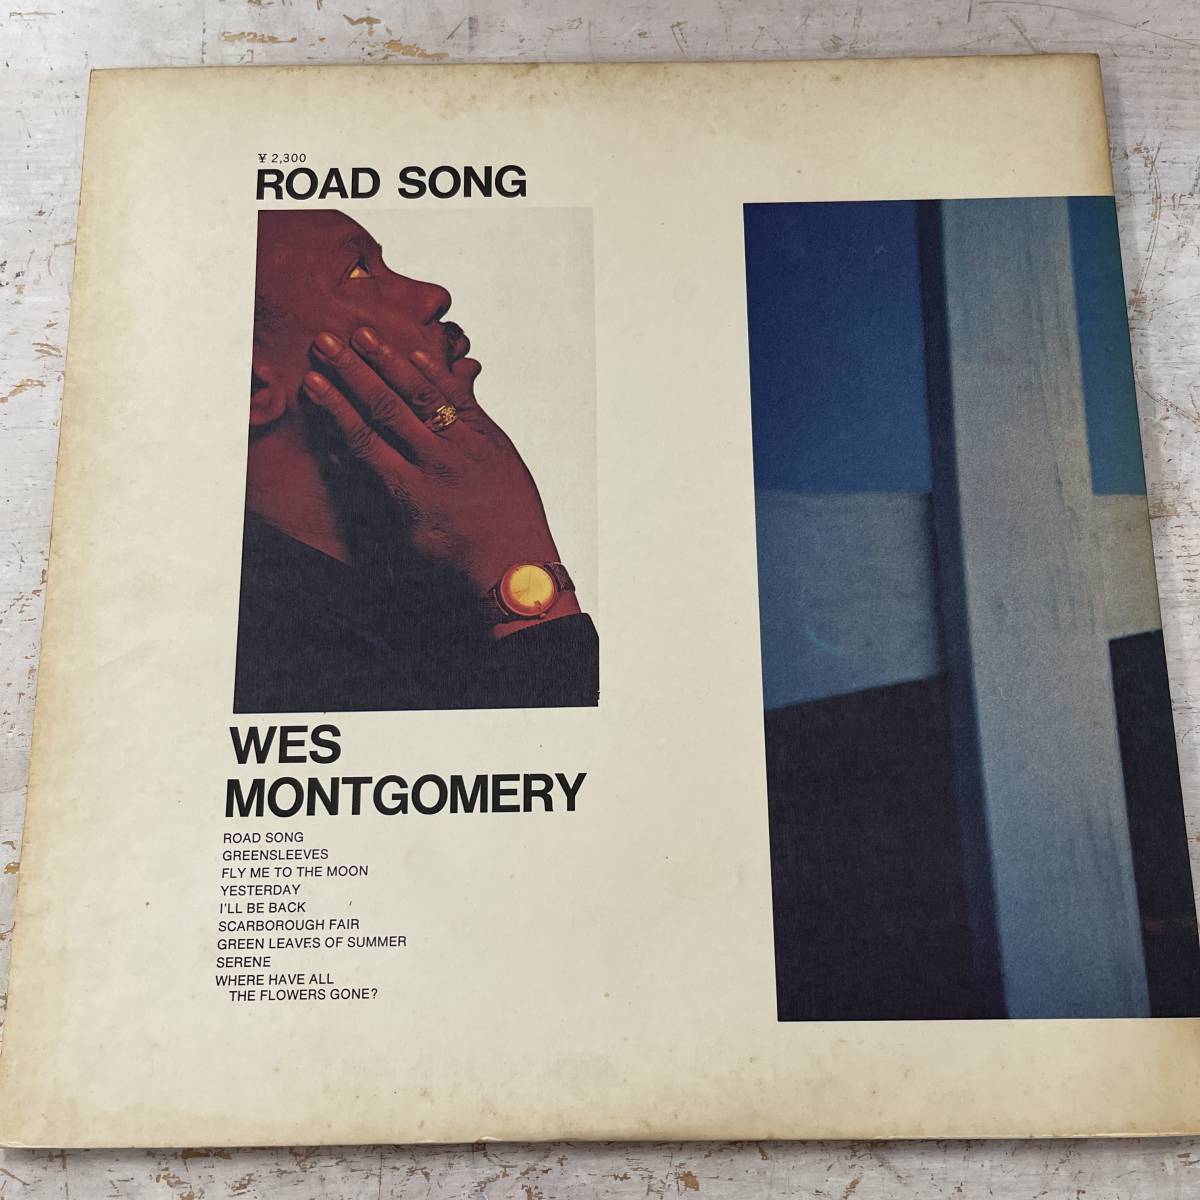 1712　【LPレコード】Wes Montgomery / Road Song / ウェス・モンゴメリー / A&M AML 353 / LP / 国内盤 / 1972年_画像2